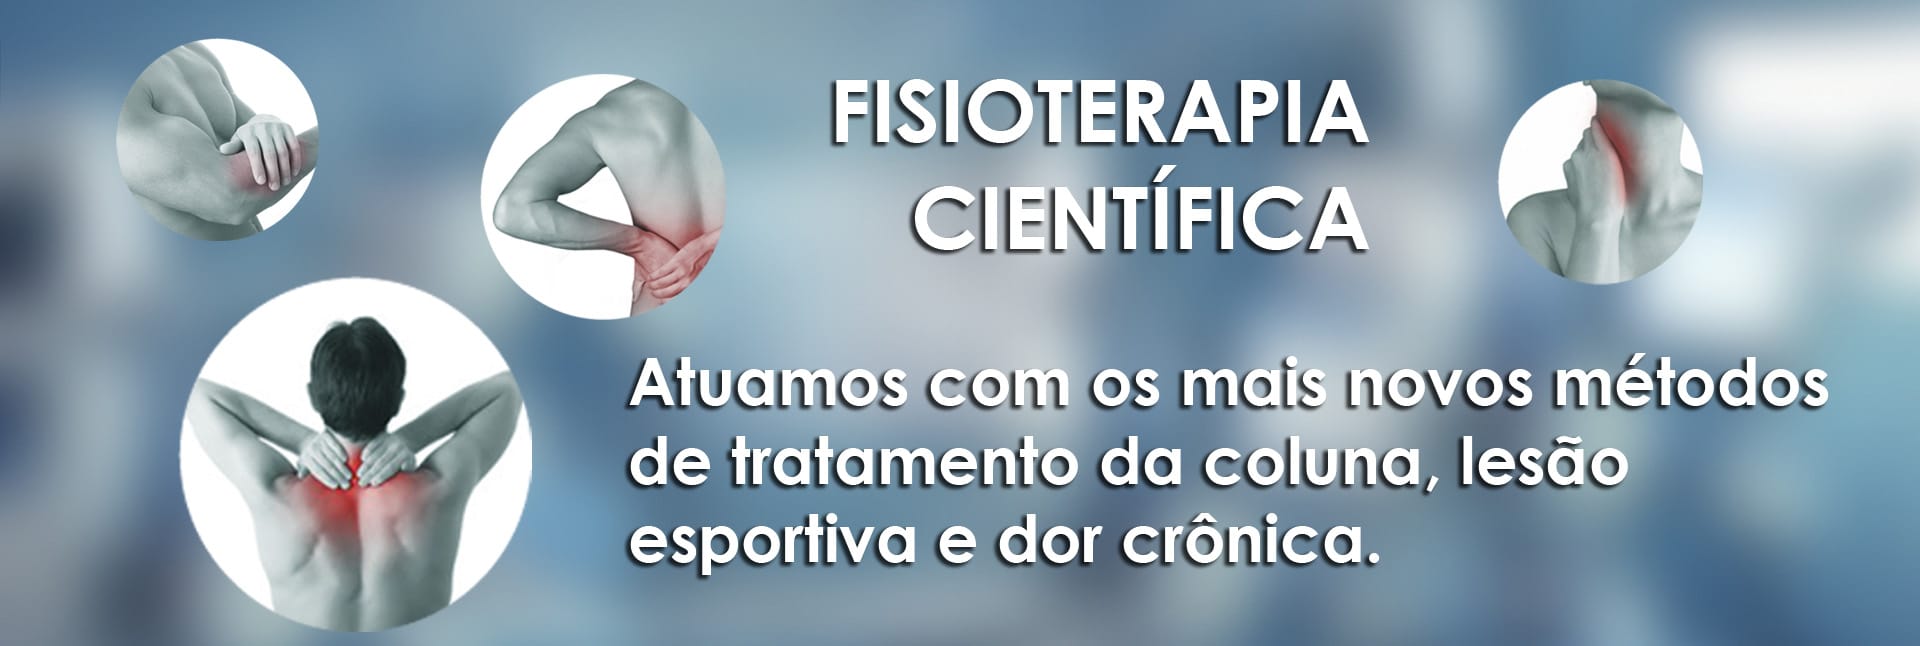 banner02-FISIOTERAPIAcientifica2